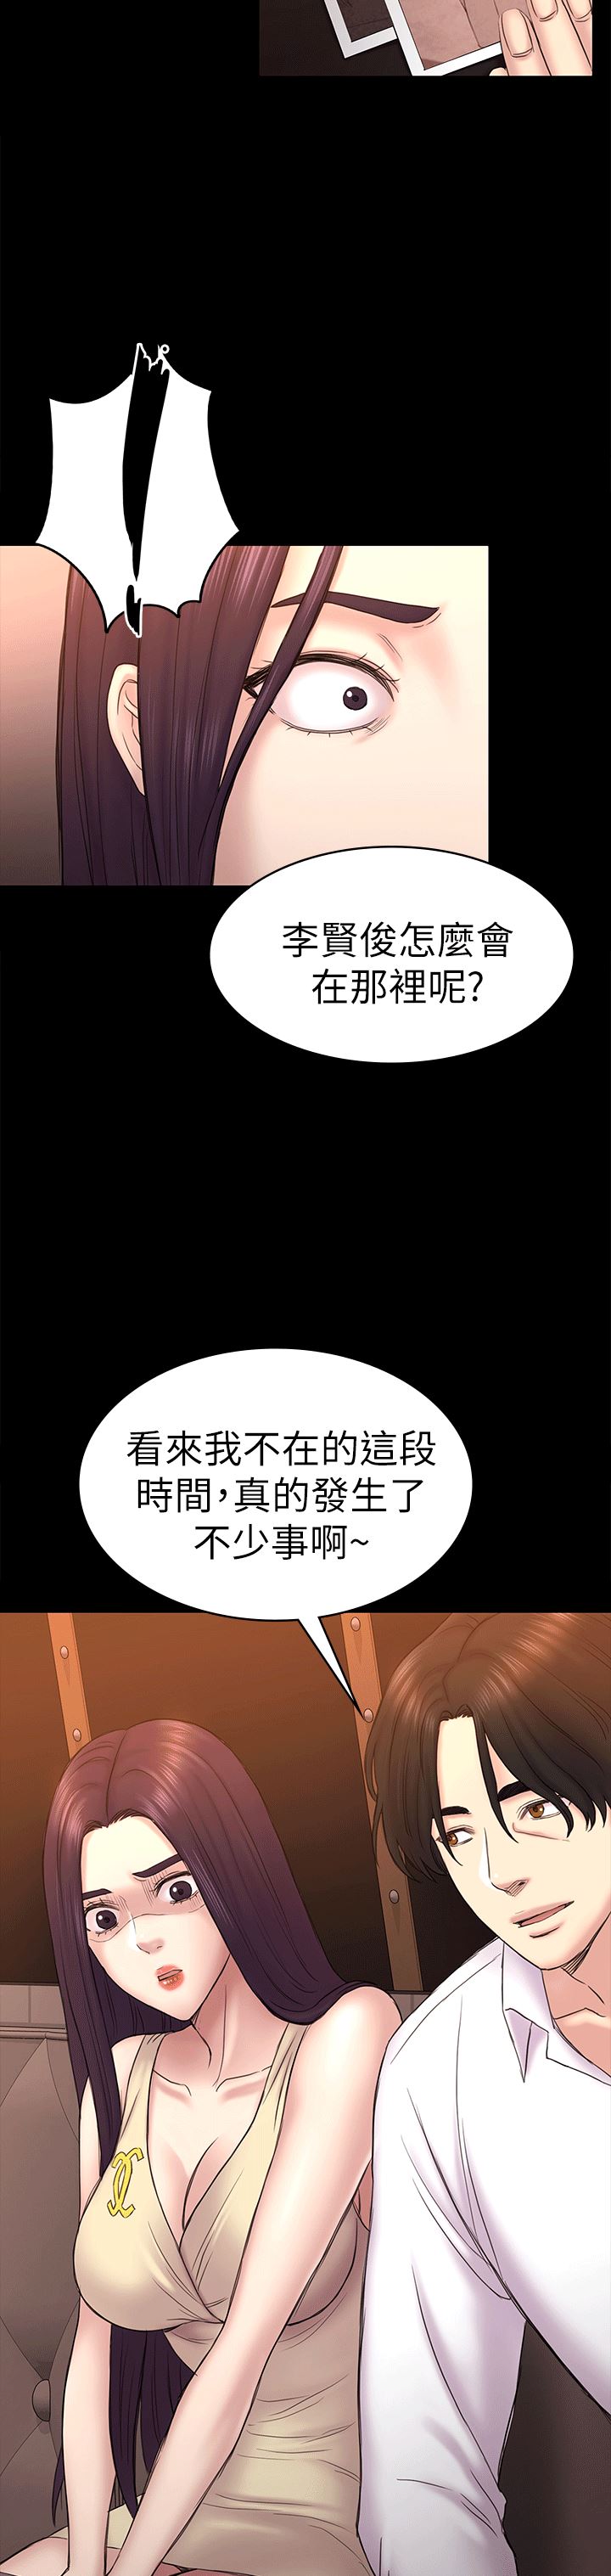 韩国污漫画 初戀陷阱 第54话-强慕选择蓝天的原因 29